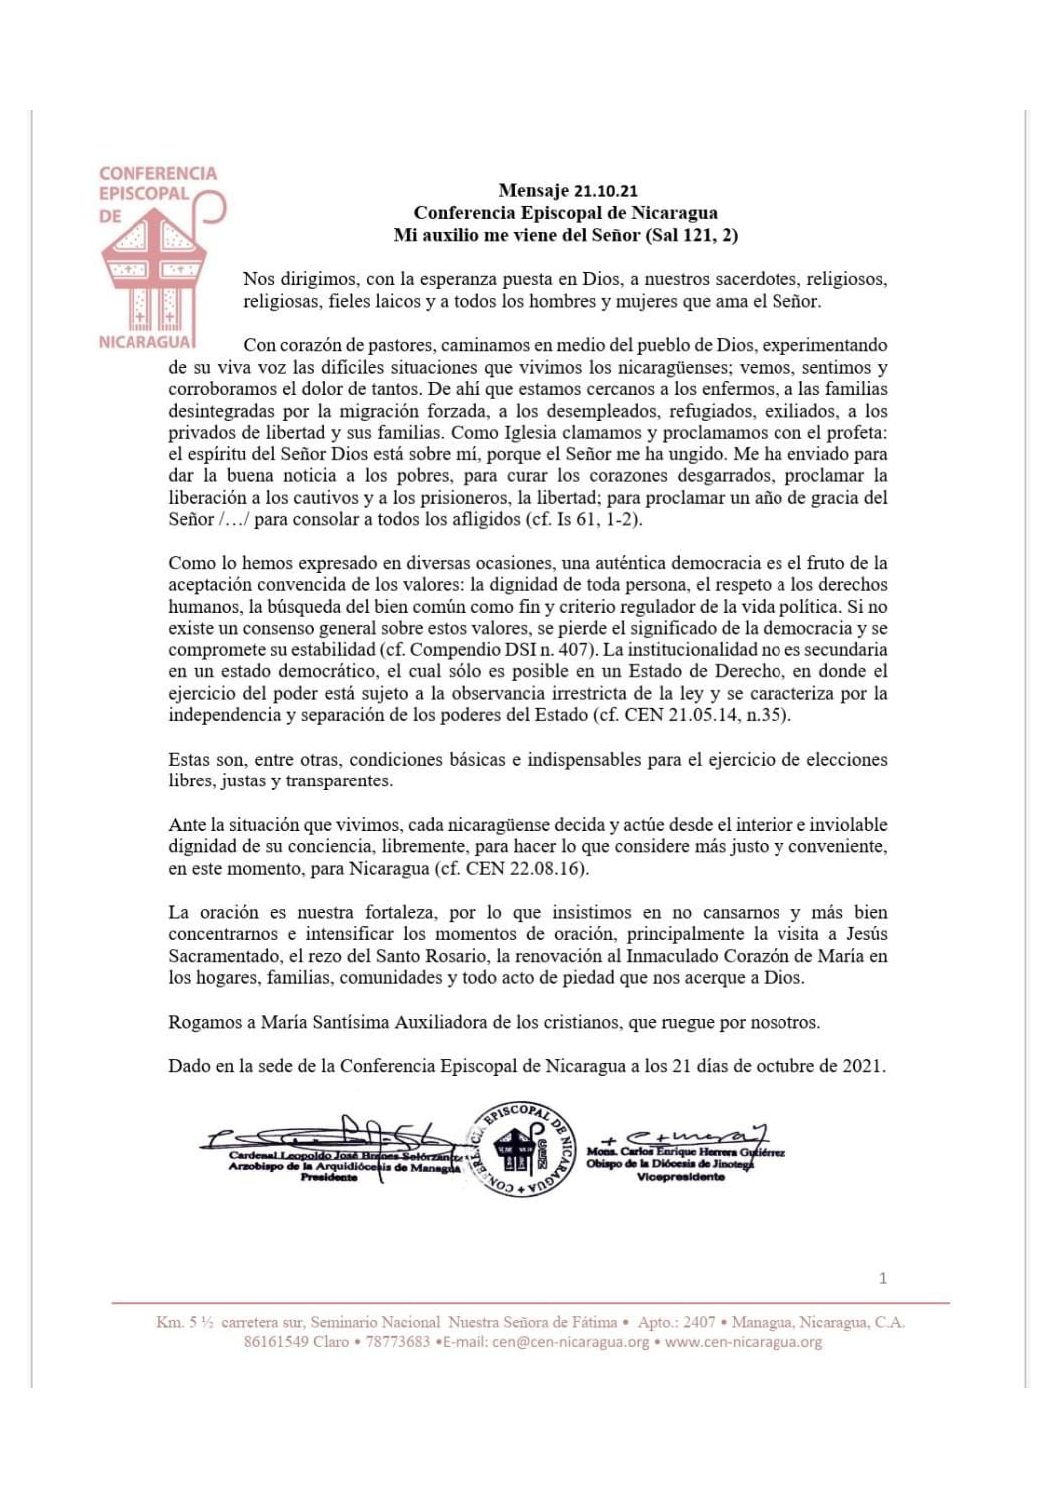 MENSAJE CONFERENCIA EPISCOPAL DE NICARAGUA  21.10.21